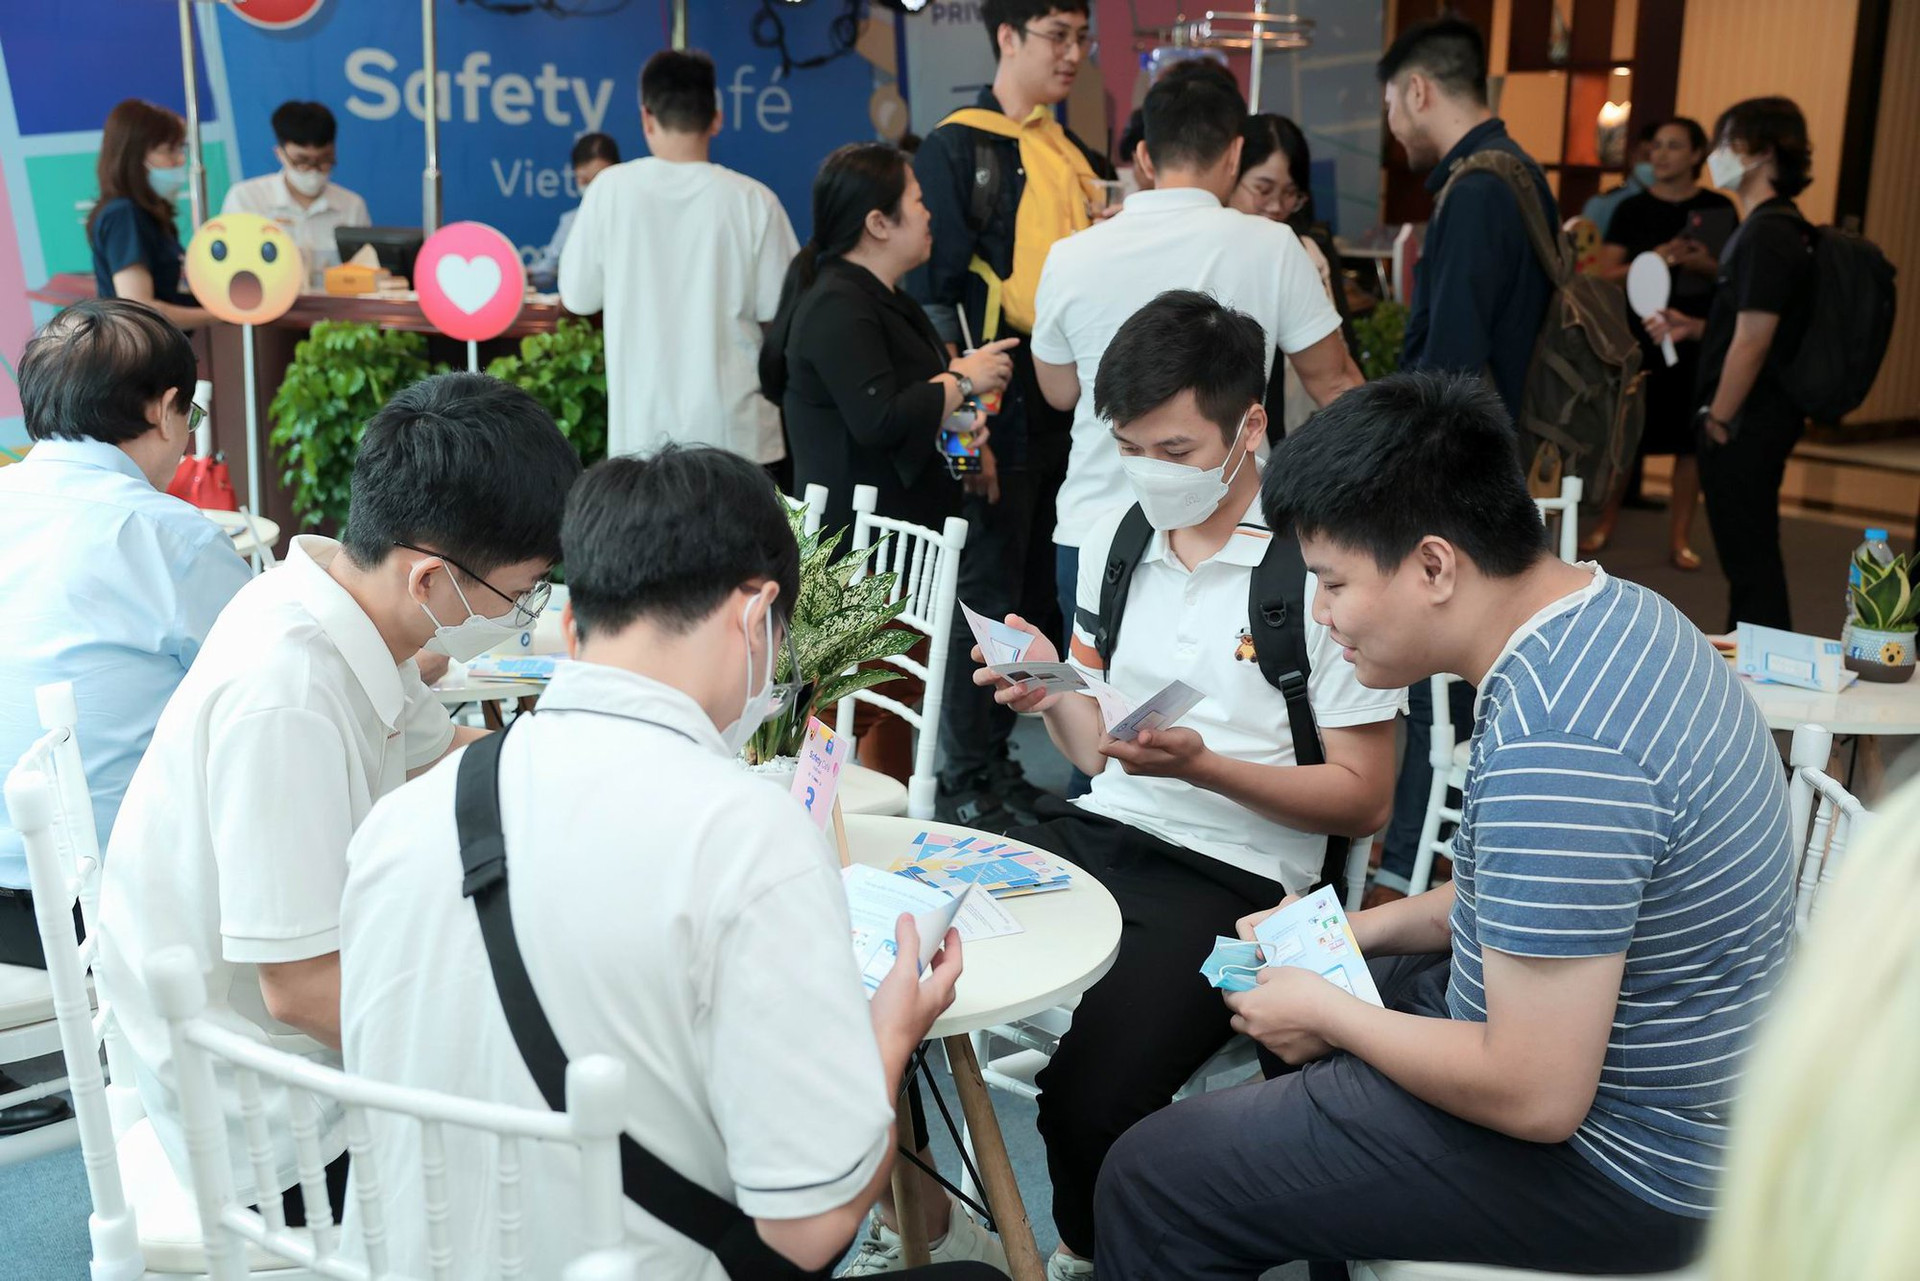 Safety Café Vietnam – không gian thân thiện trải nghiệm an toàn trực tuyến - Ảnh 6.